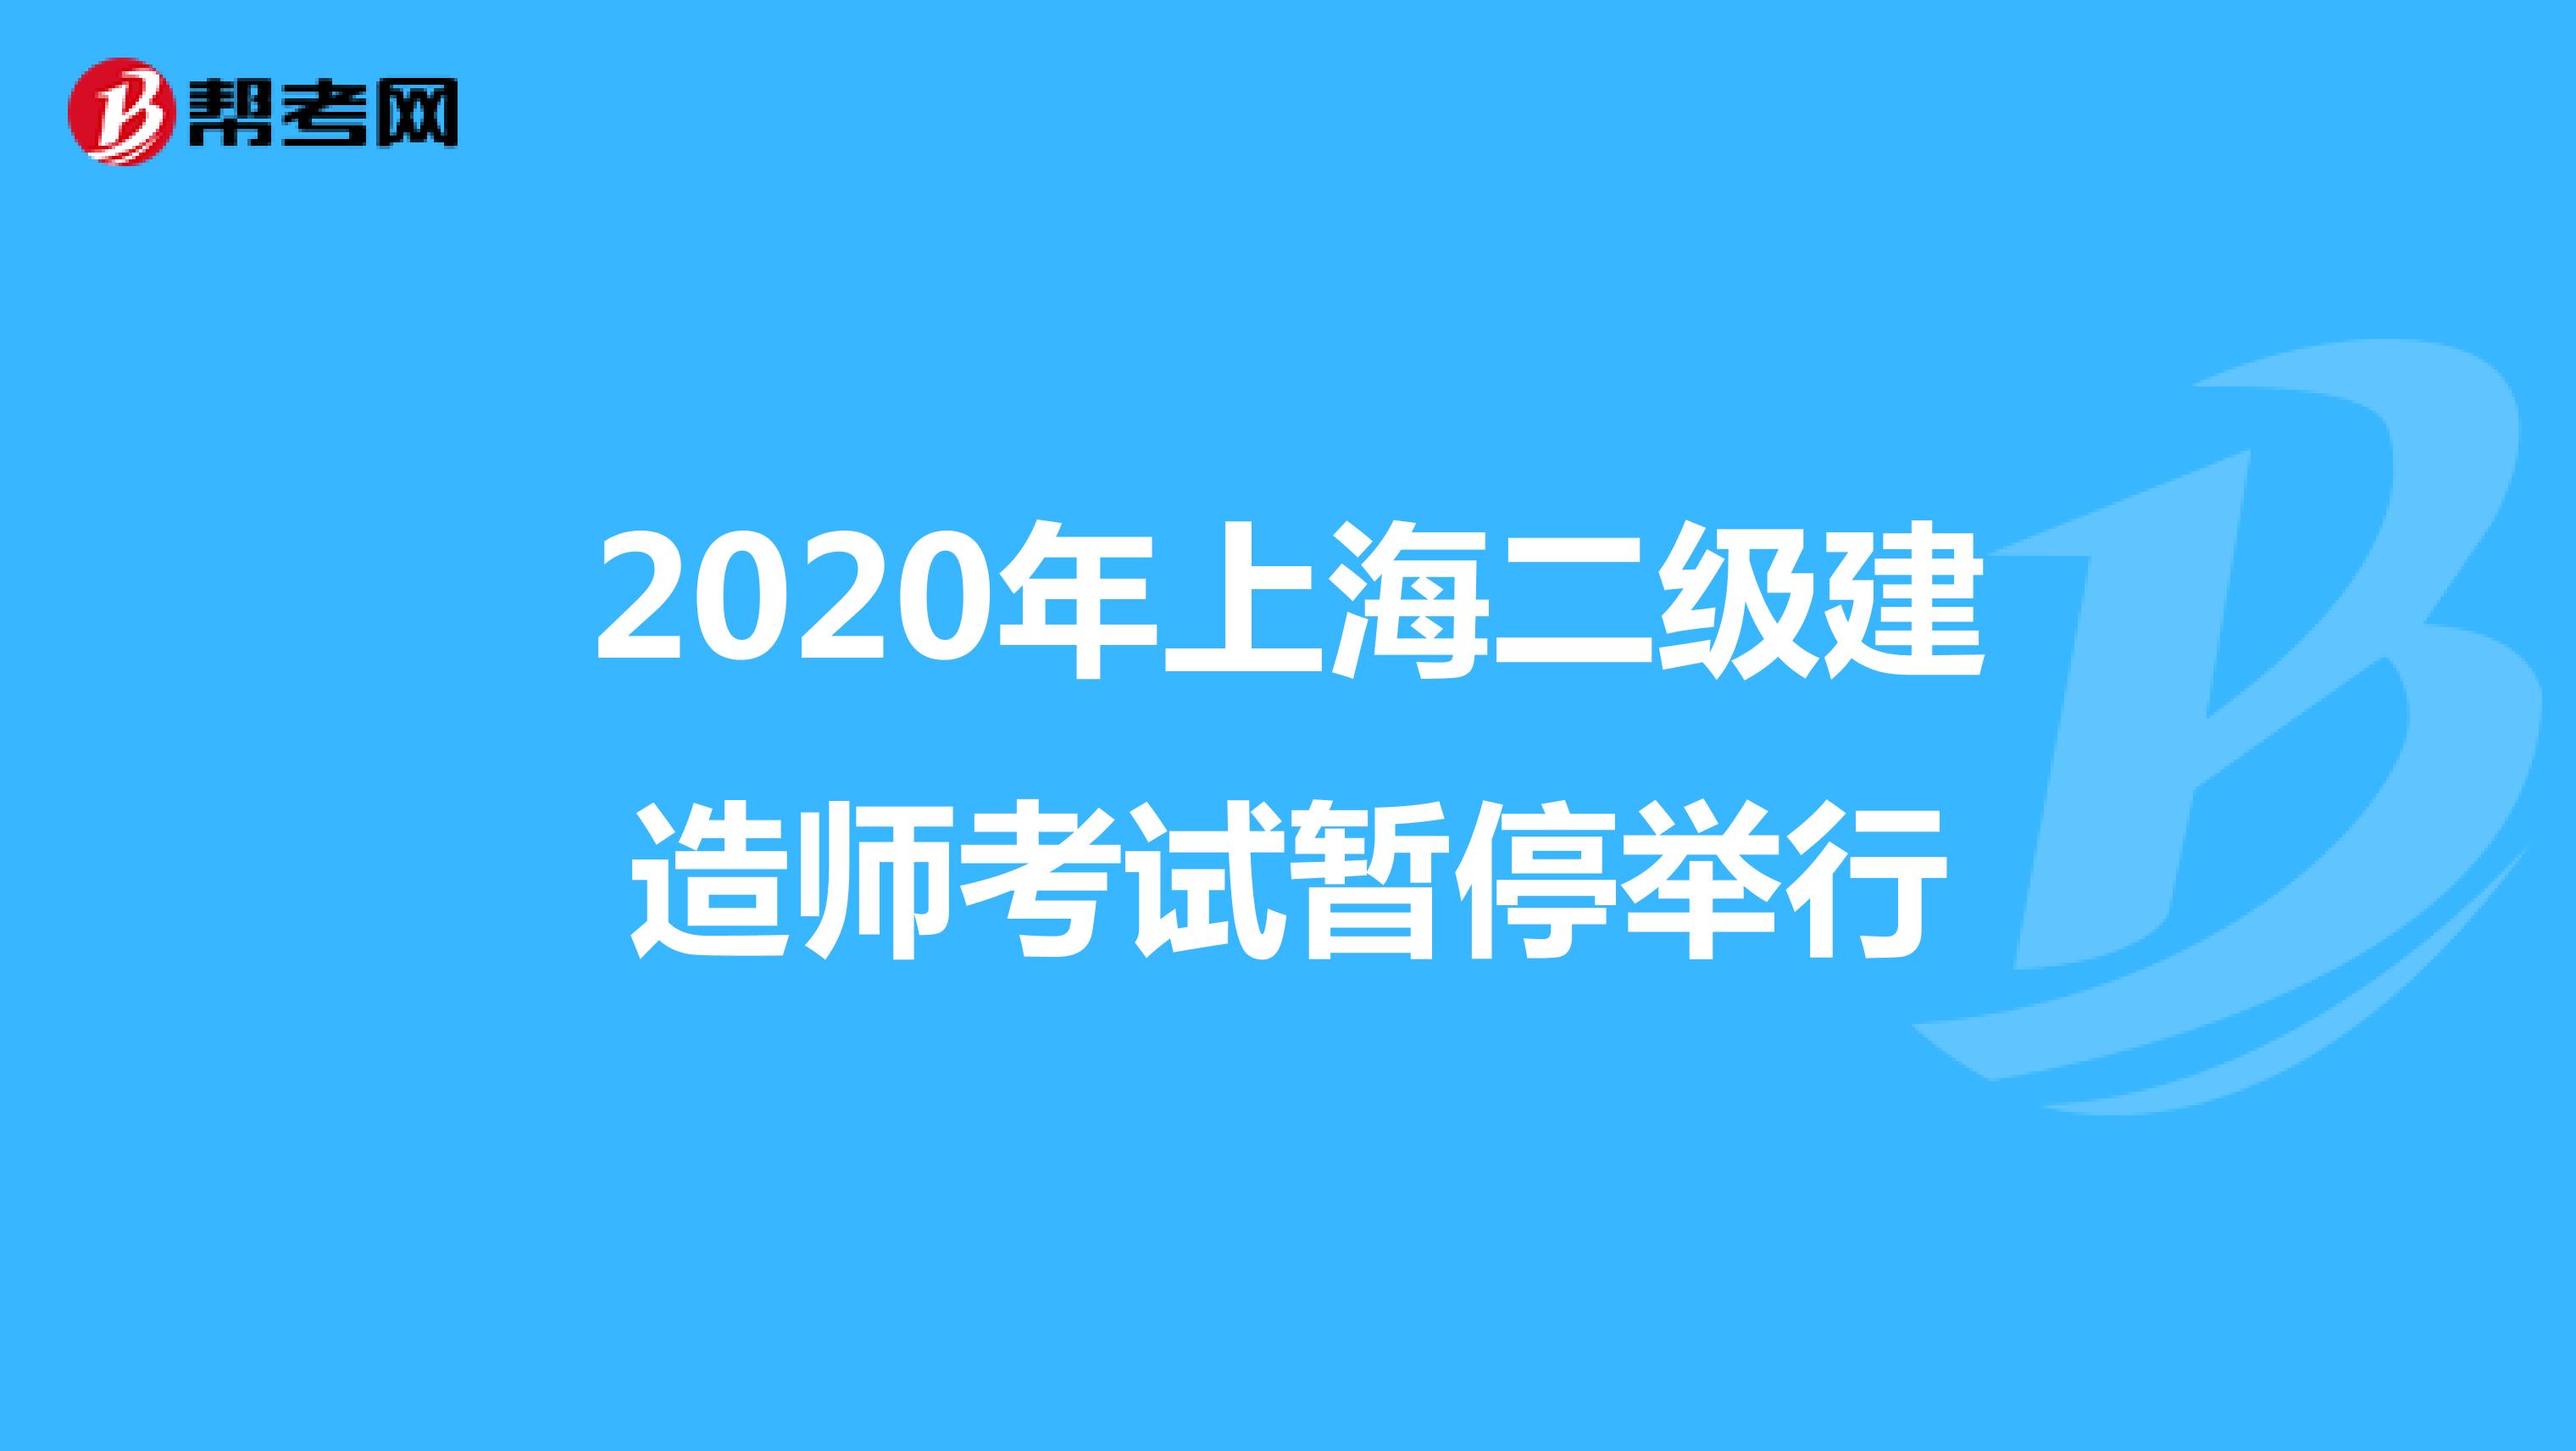 2020年上海二级建造师考试暂停举行